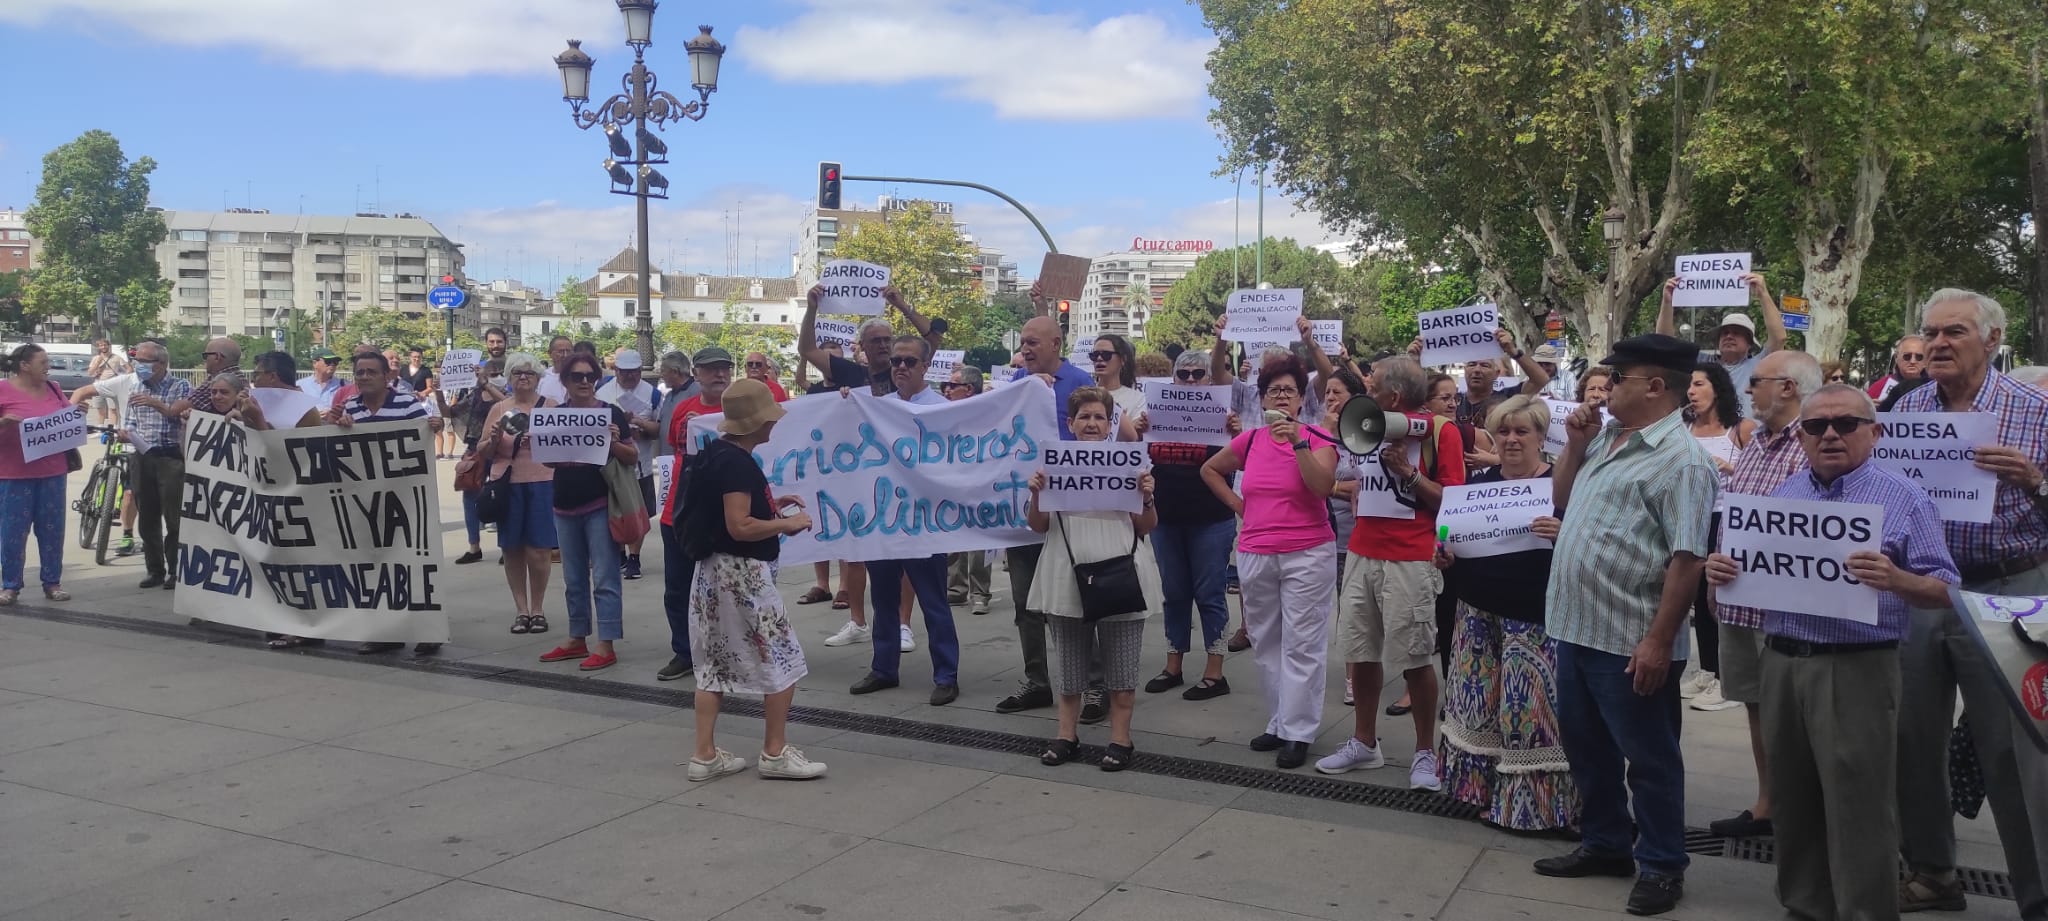 Vecinos y vecinas frente al Palacio de San Telmo para exigir medidas urgentes contra los cortes de luz en los barrios obreros de Sevilla.